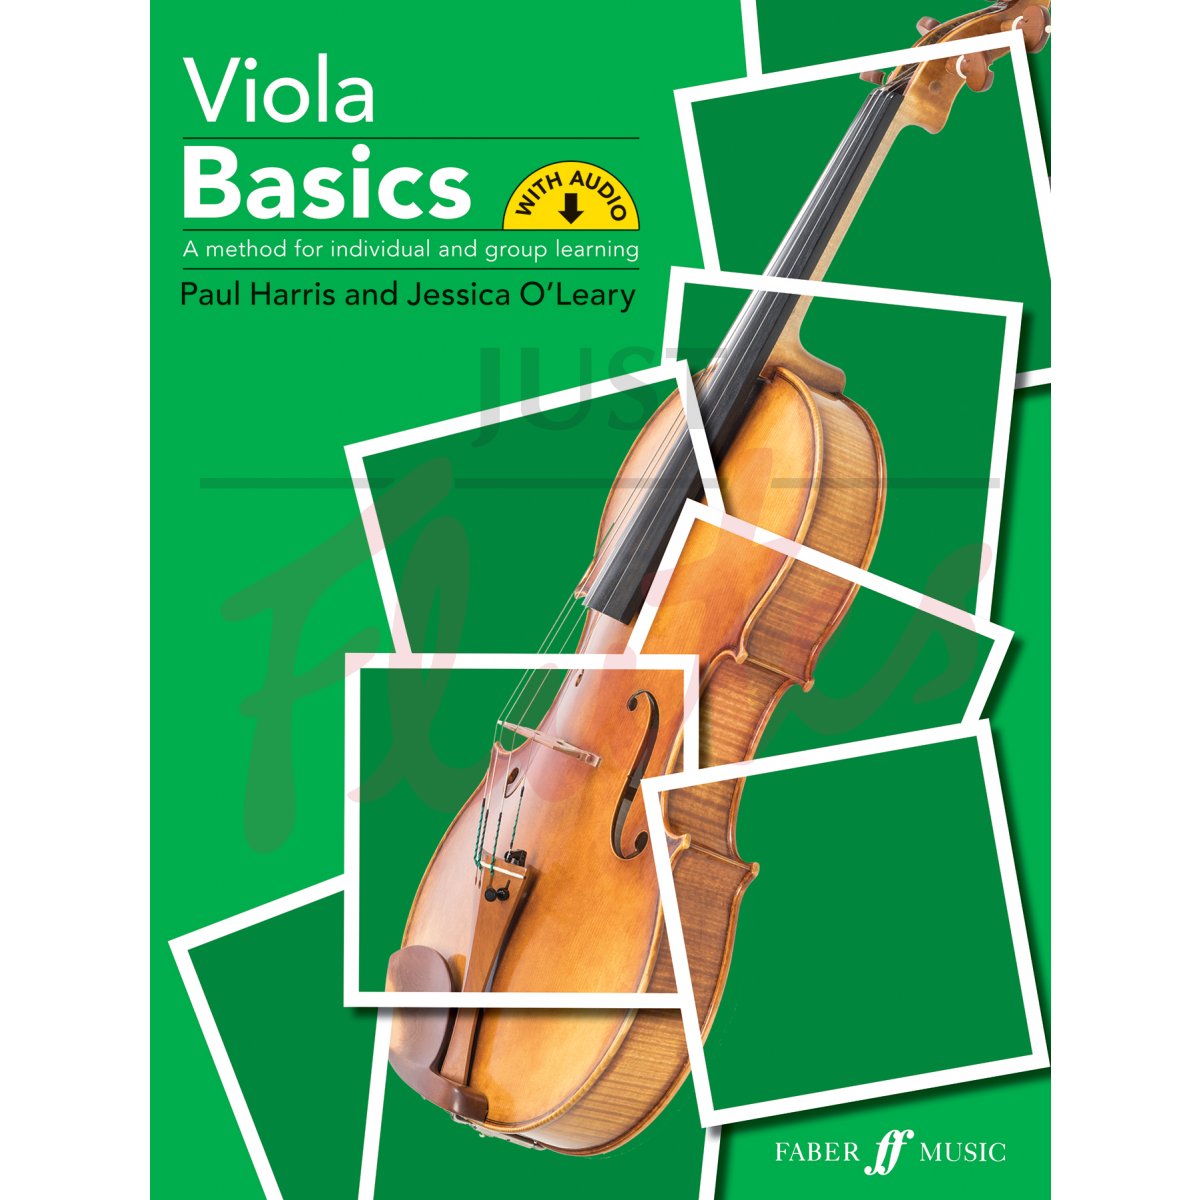 Viola Basics